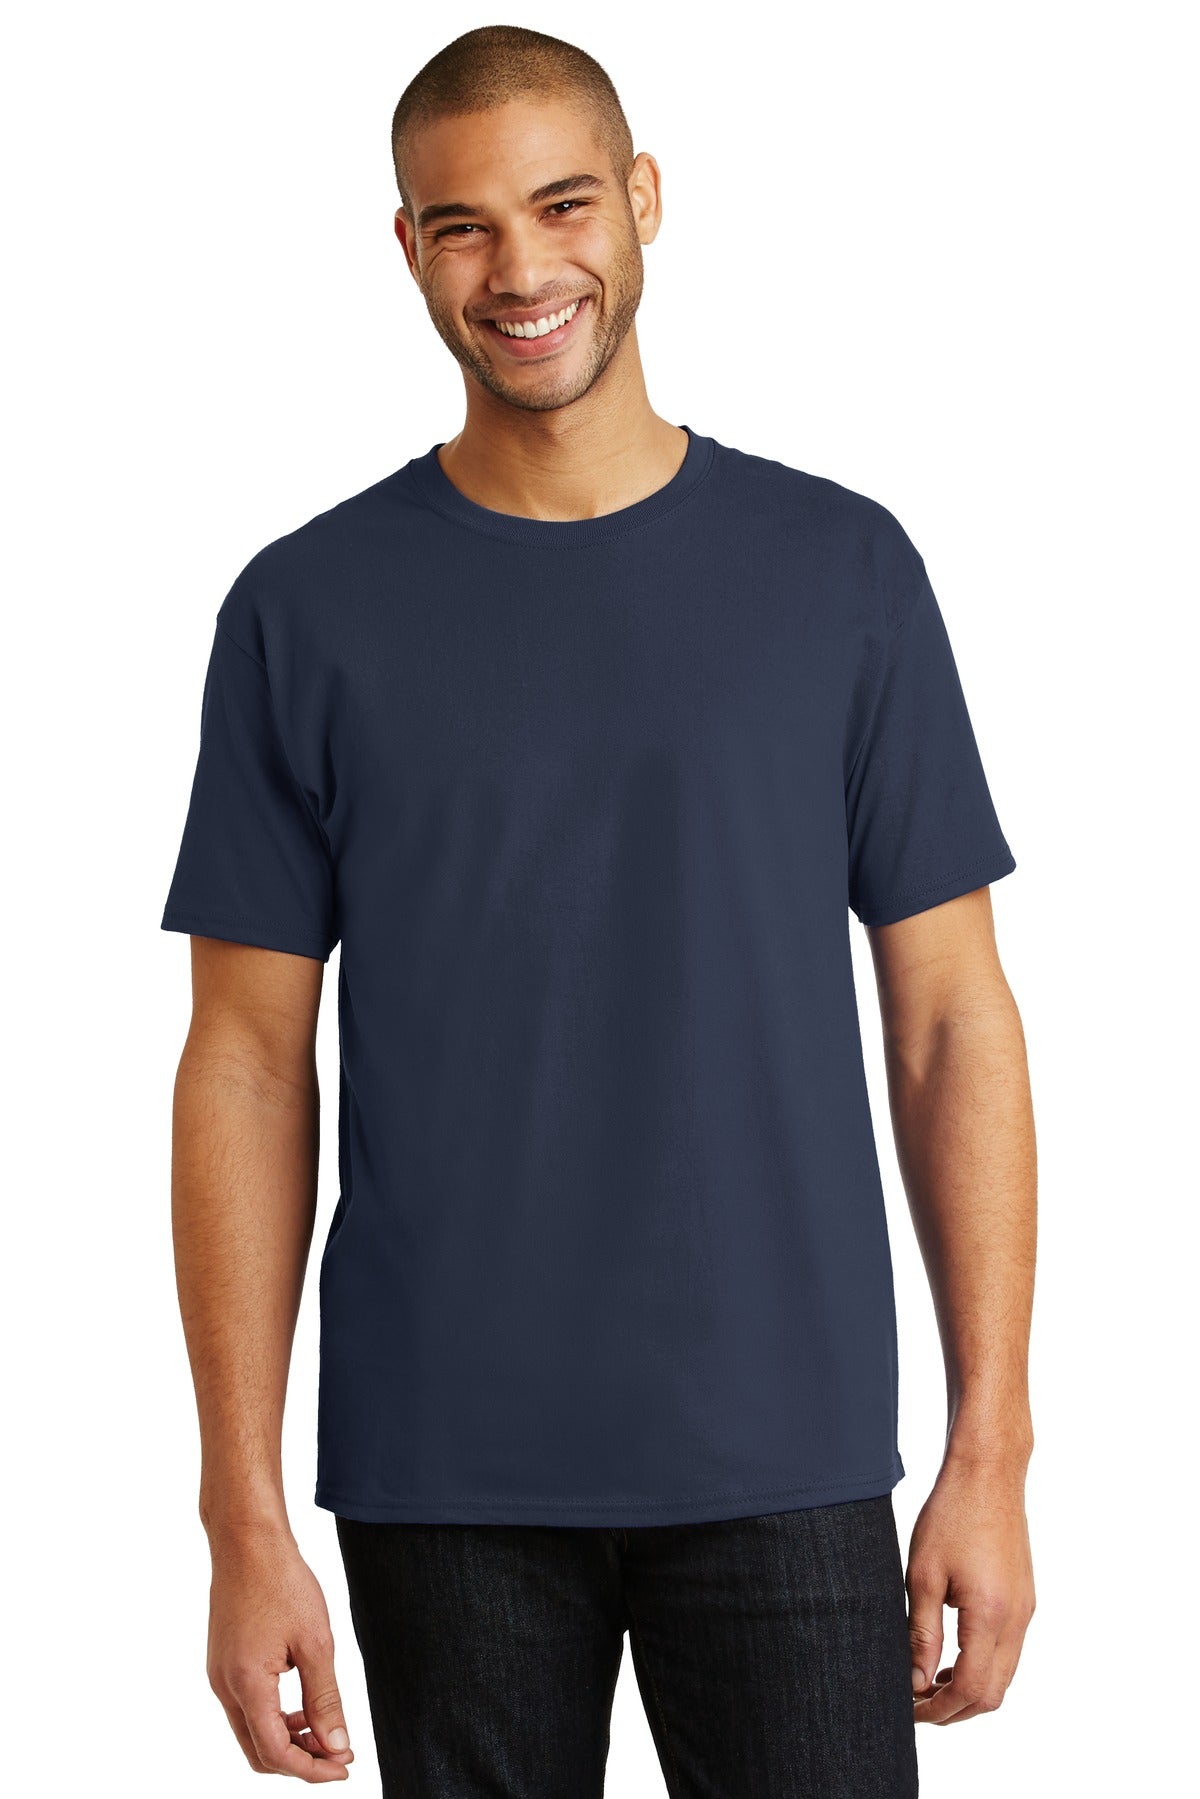 T-Shirts Navy Hanes